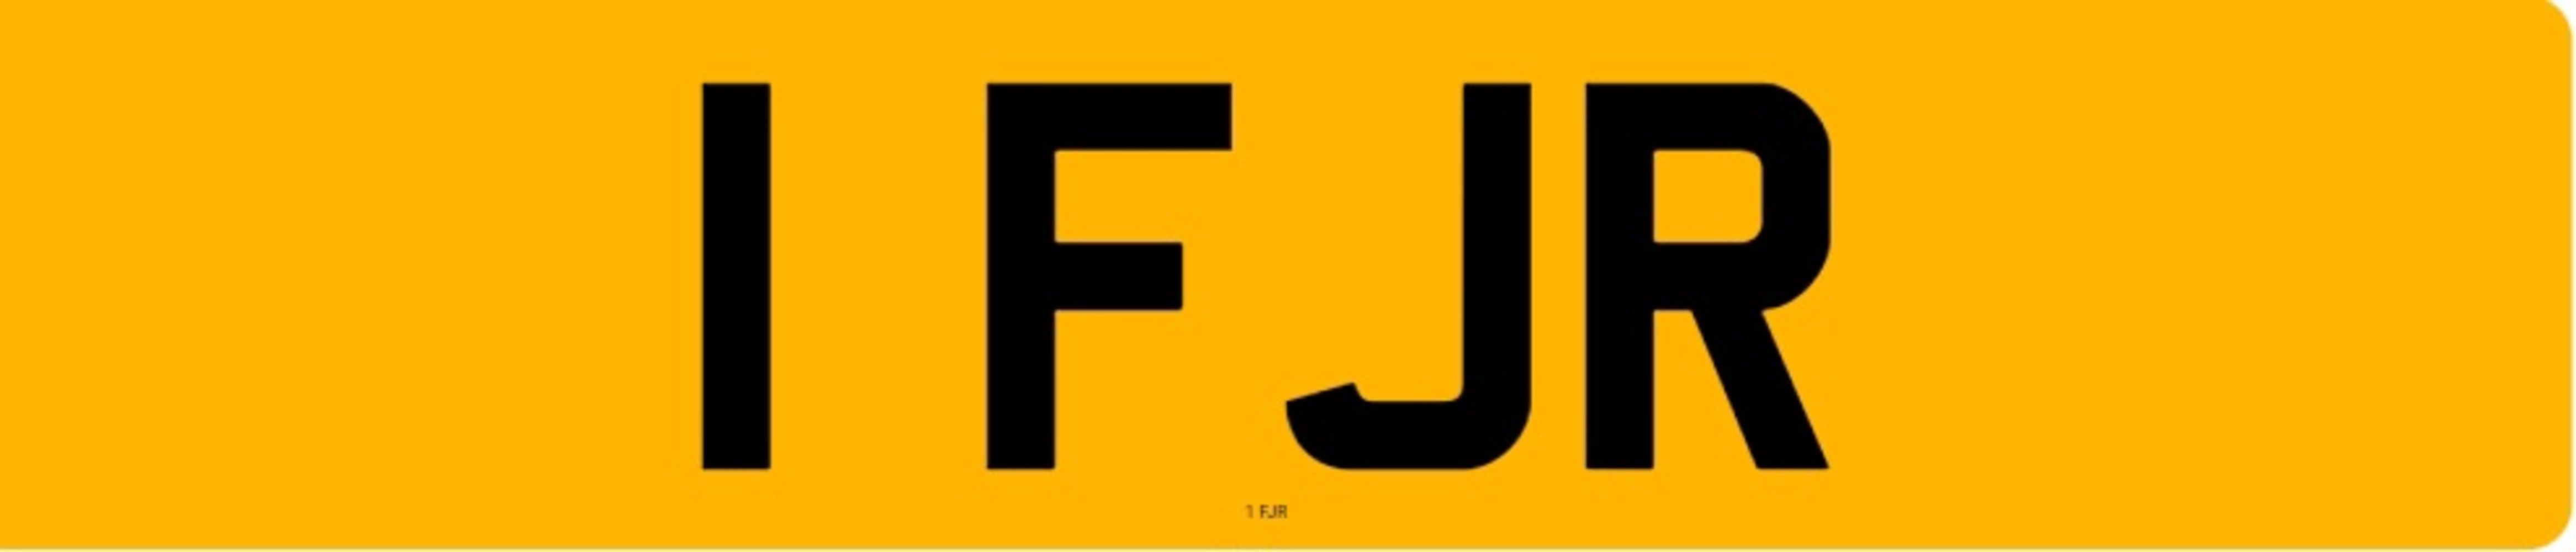 Cherished Number Plate – 1 FJR